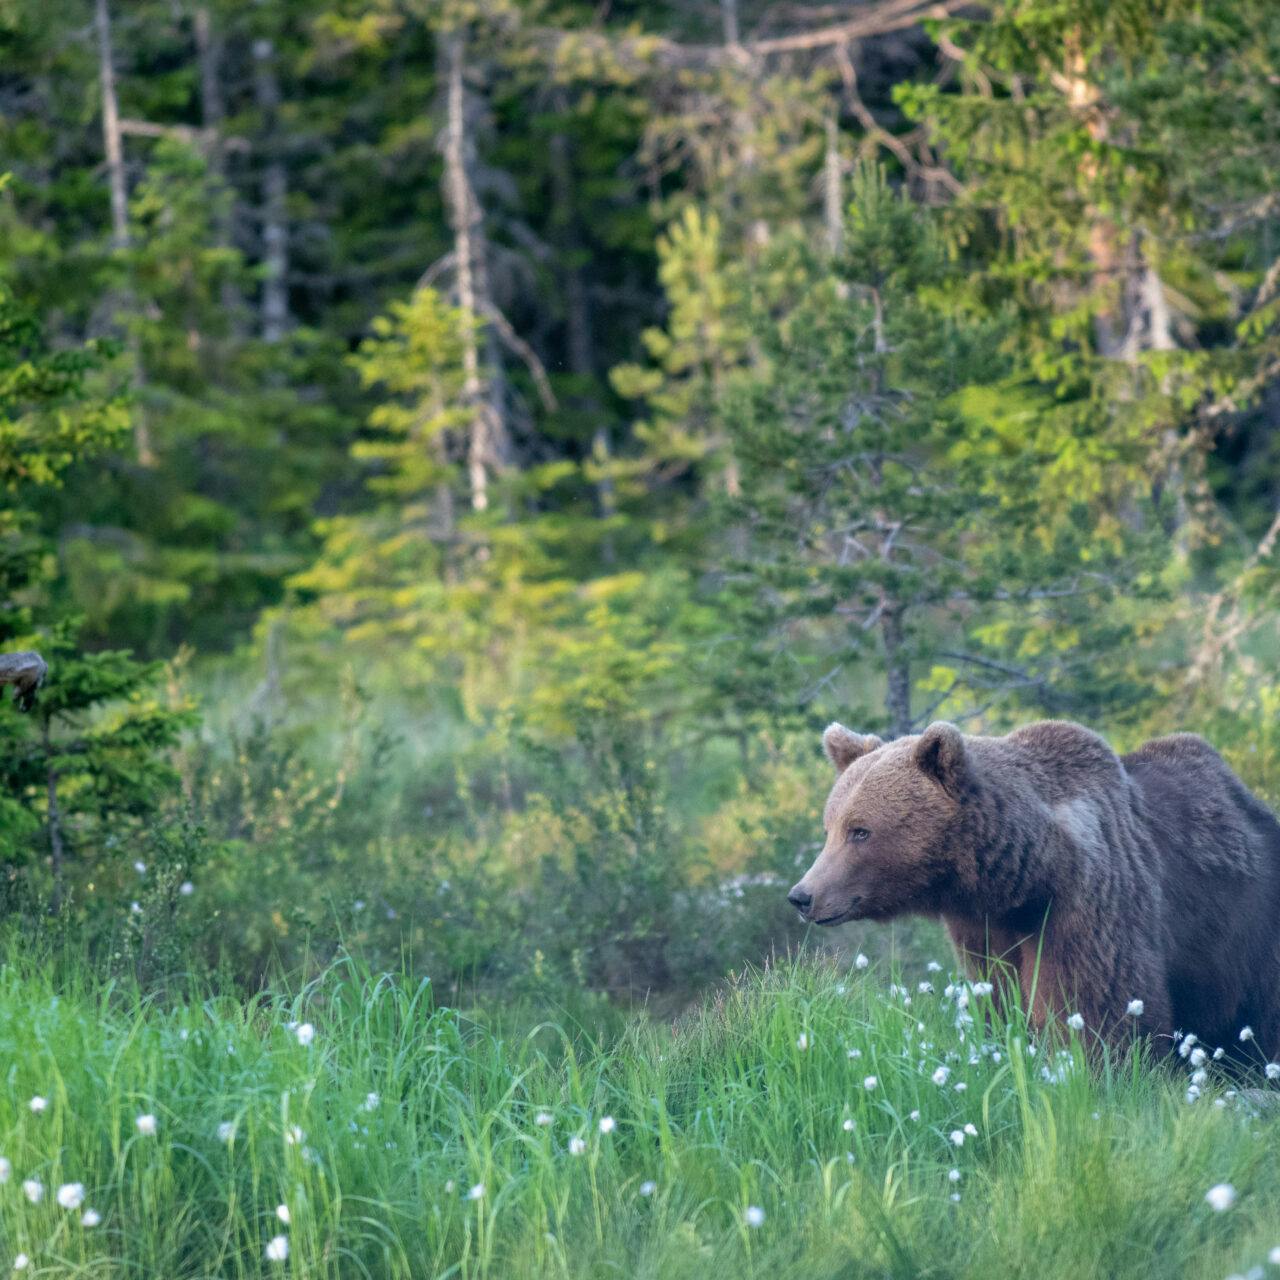 Bilden visar en brunbjörn som vandrar genom en äng med högt gräs och vita blommor, troligen prästkragar. I bakgrunden syns en tät barrskog. Det verkar vara tidig morgon eller sen eftermiddag eftersom ljuset är mjukt och varmt. Björnen ser ut att vara i rörelse och är placerad till vänster i bilden, vilket ger en känsla av att den har gott om utrymme att röra sig mot höger i bildramen.